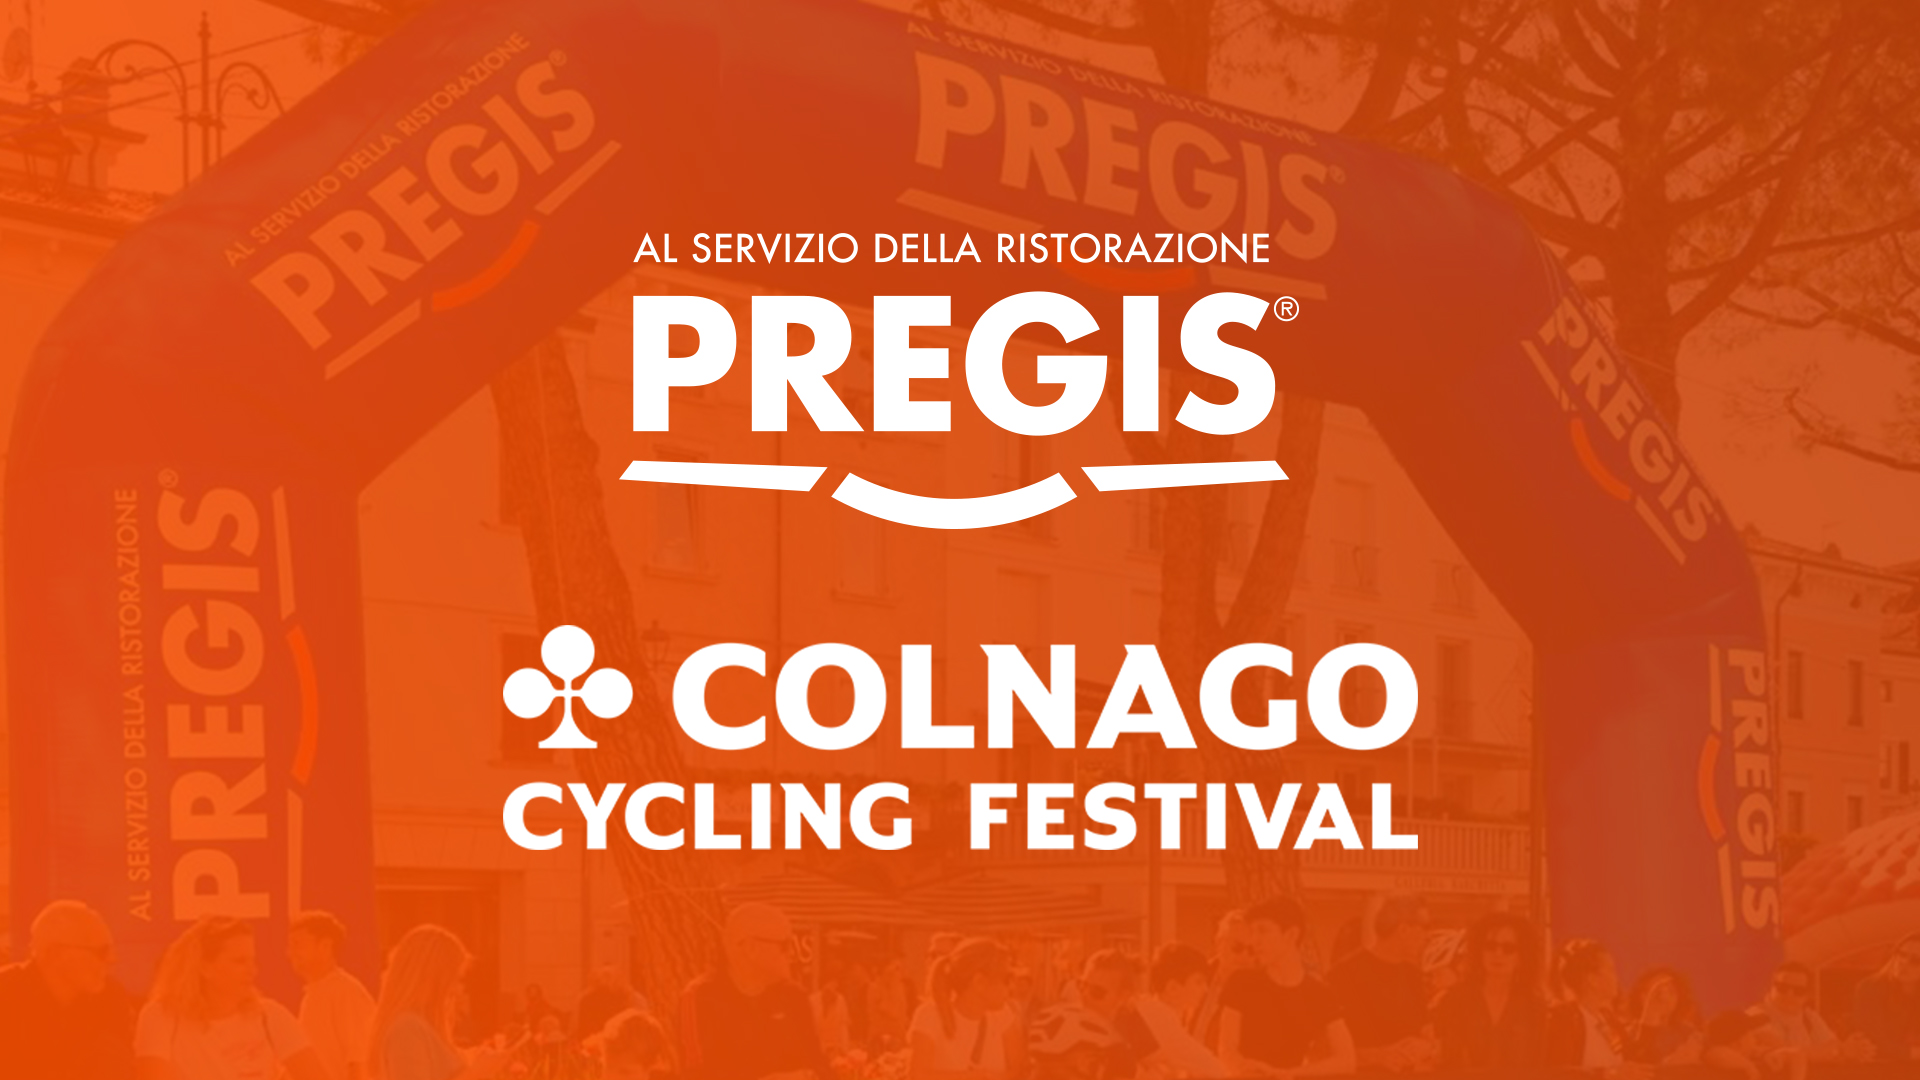 Pregis – Colnago Cycling Festival Desenzano del Garda